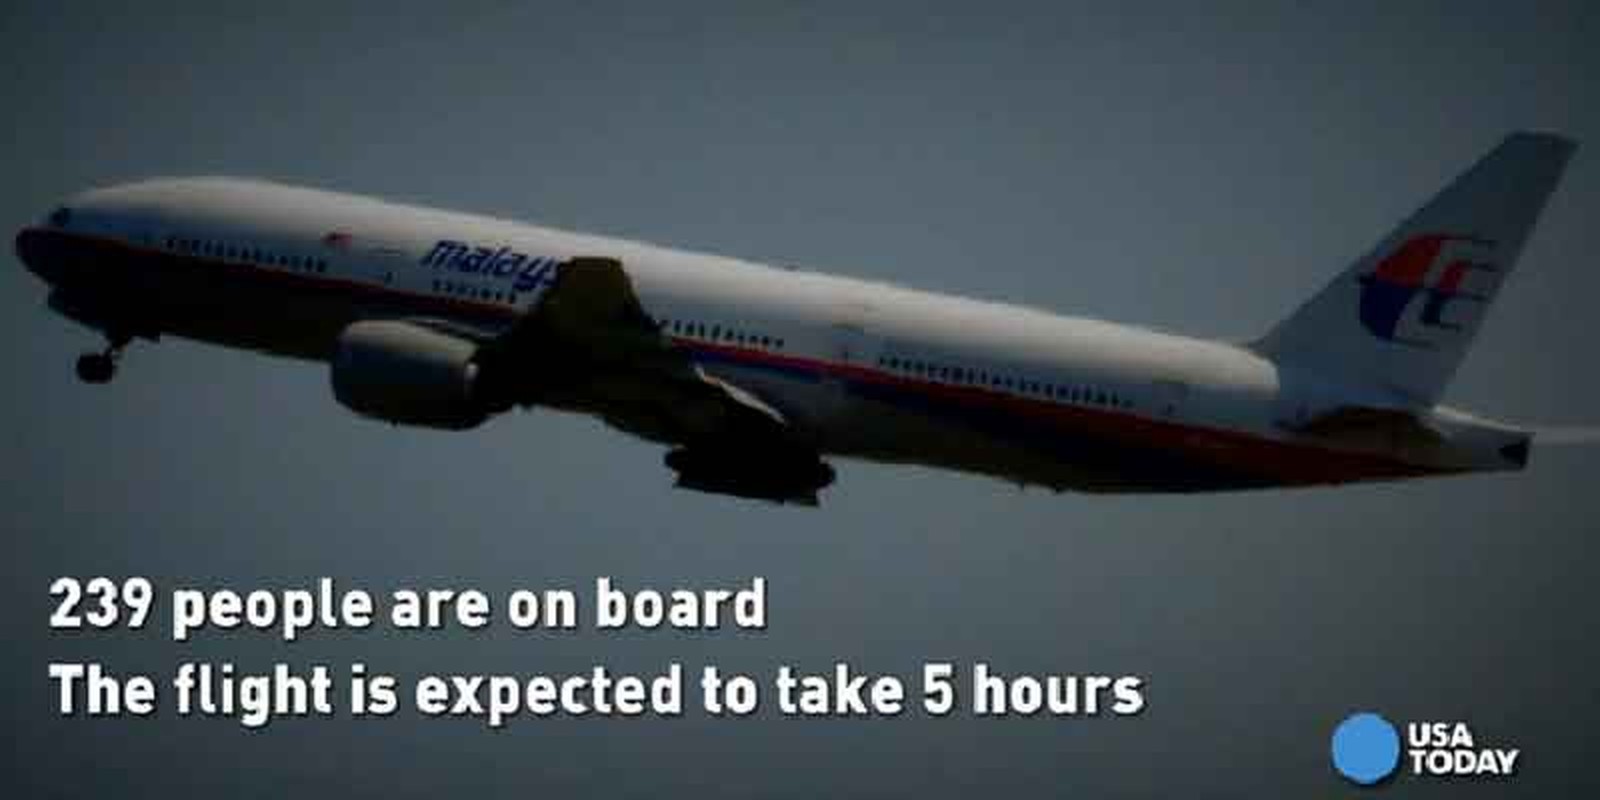 Nhin lai mot nam khac khoai tim kiem MH370-Hinh-3